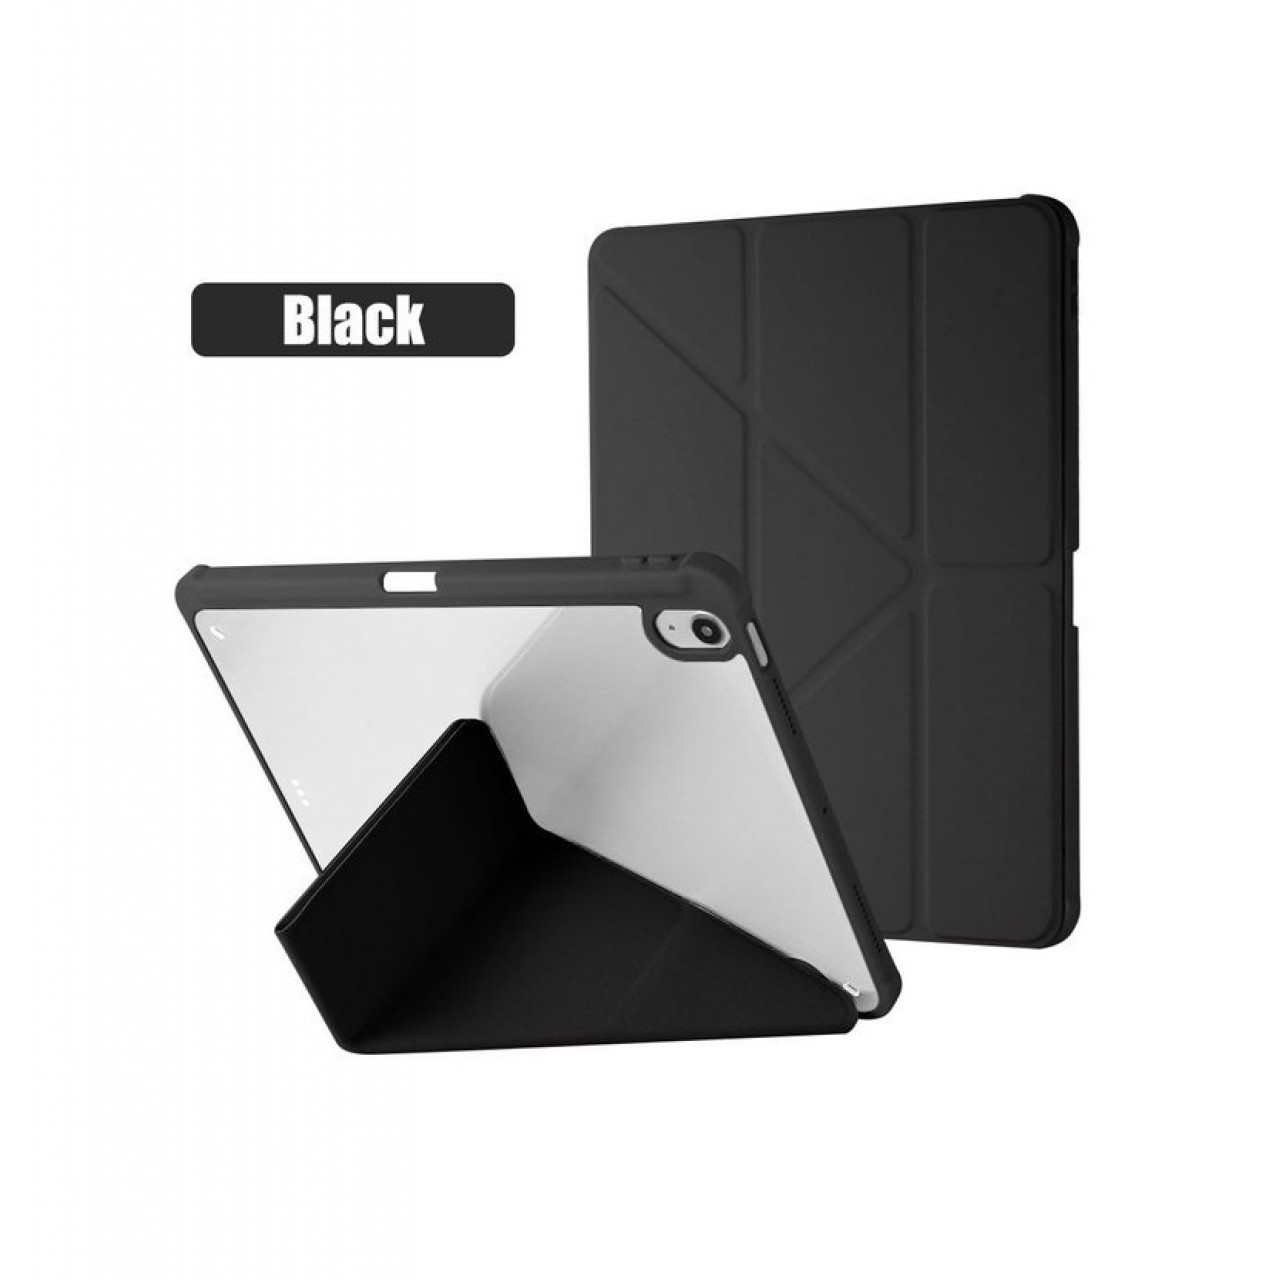 Θήκη Τάμπλετ Μαγνητική Apple iPad Mini 6 - 8.3 inch με Προστασία Κάμερας και Θέση για Γραφίδα - Black